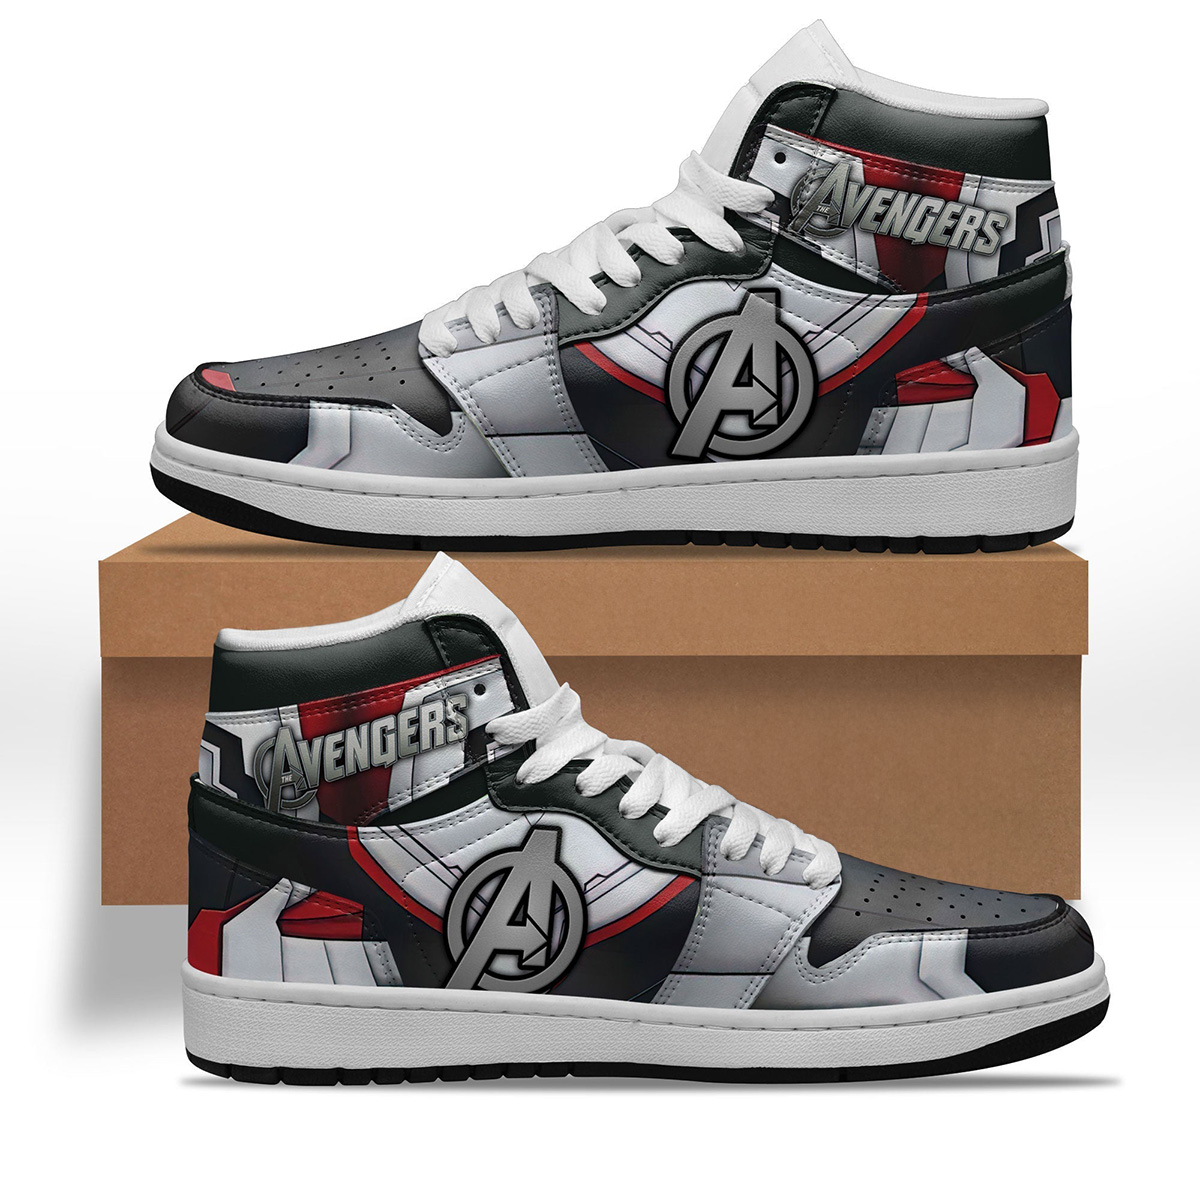 Avengers Shoes Custom Super Heroes Sneakers